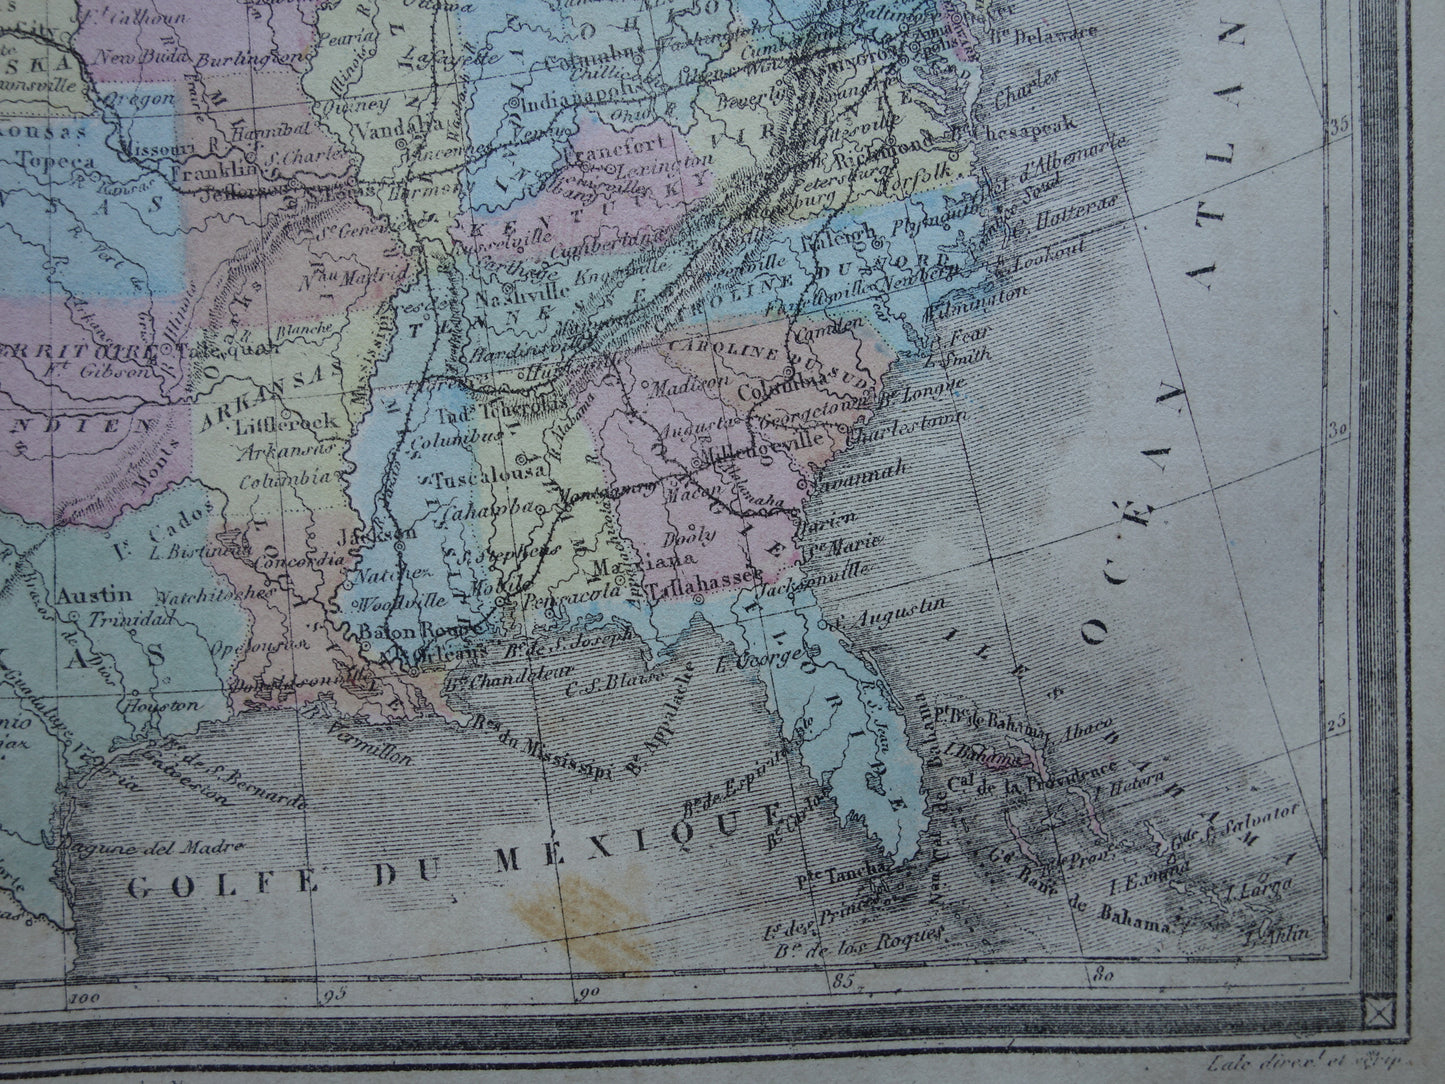 Oude kaart van VERENIGDE STATEN 145+ jaar oude antieke handgekleurde landkaart USA VS